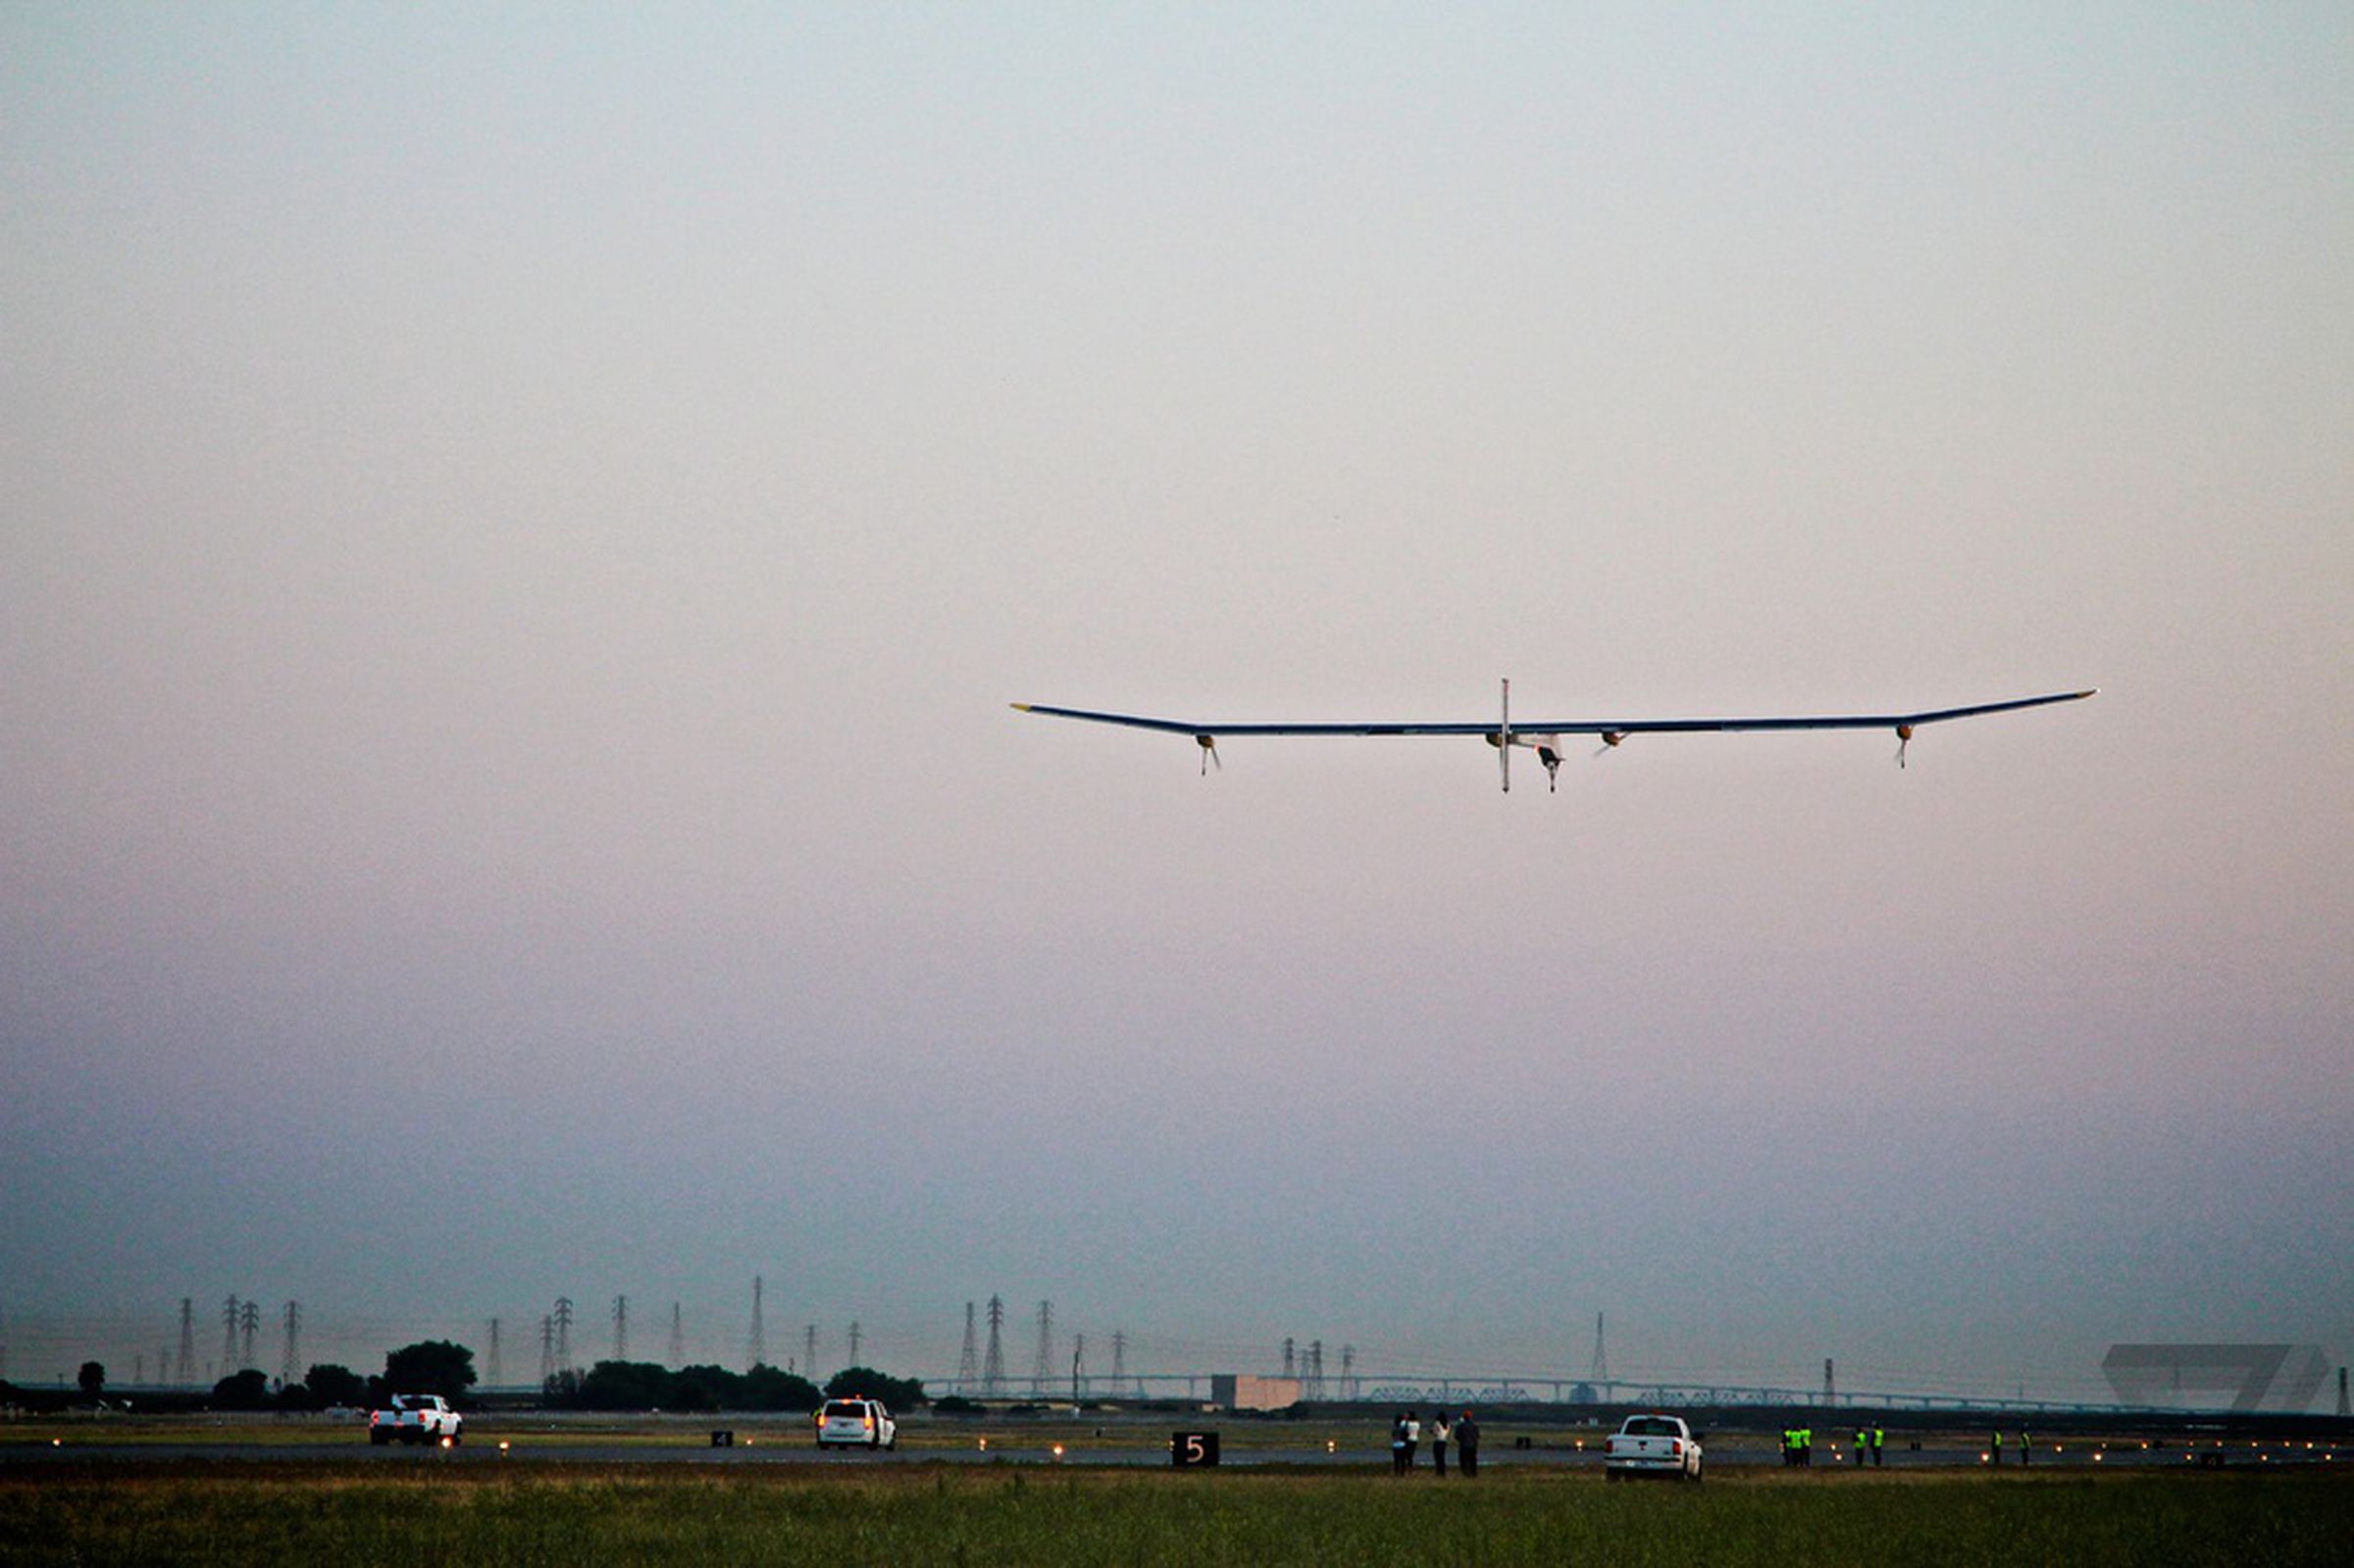 Solar Impulse plane at Moffett Field, May 3rd, 2013